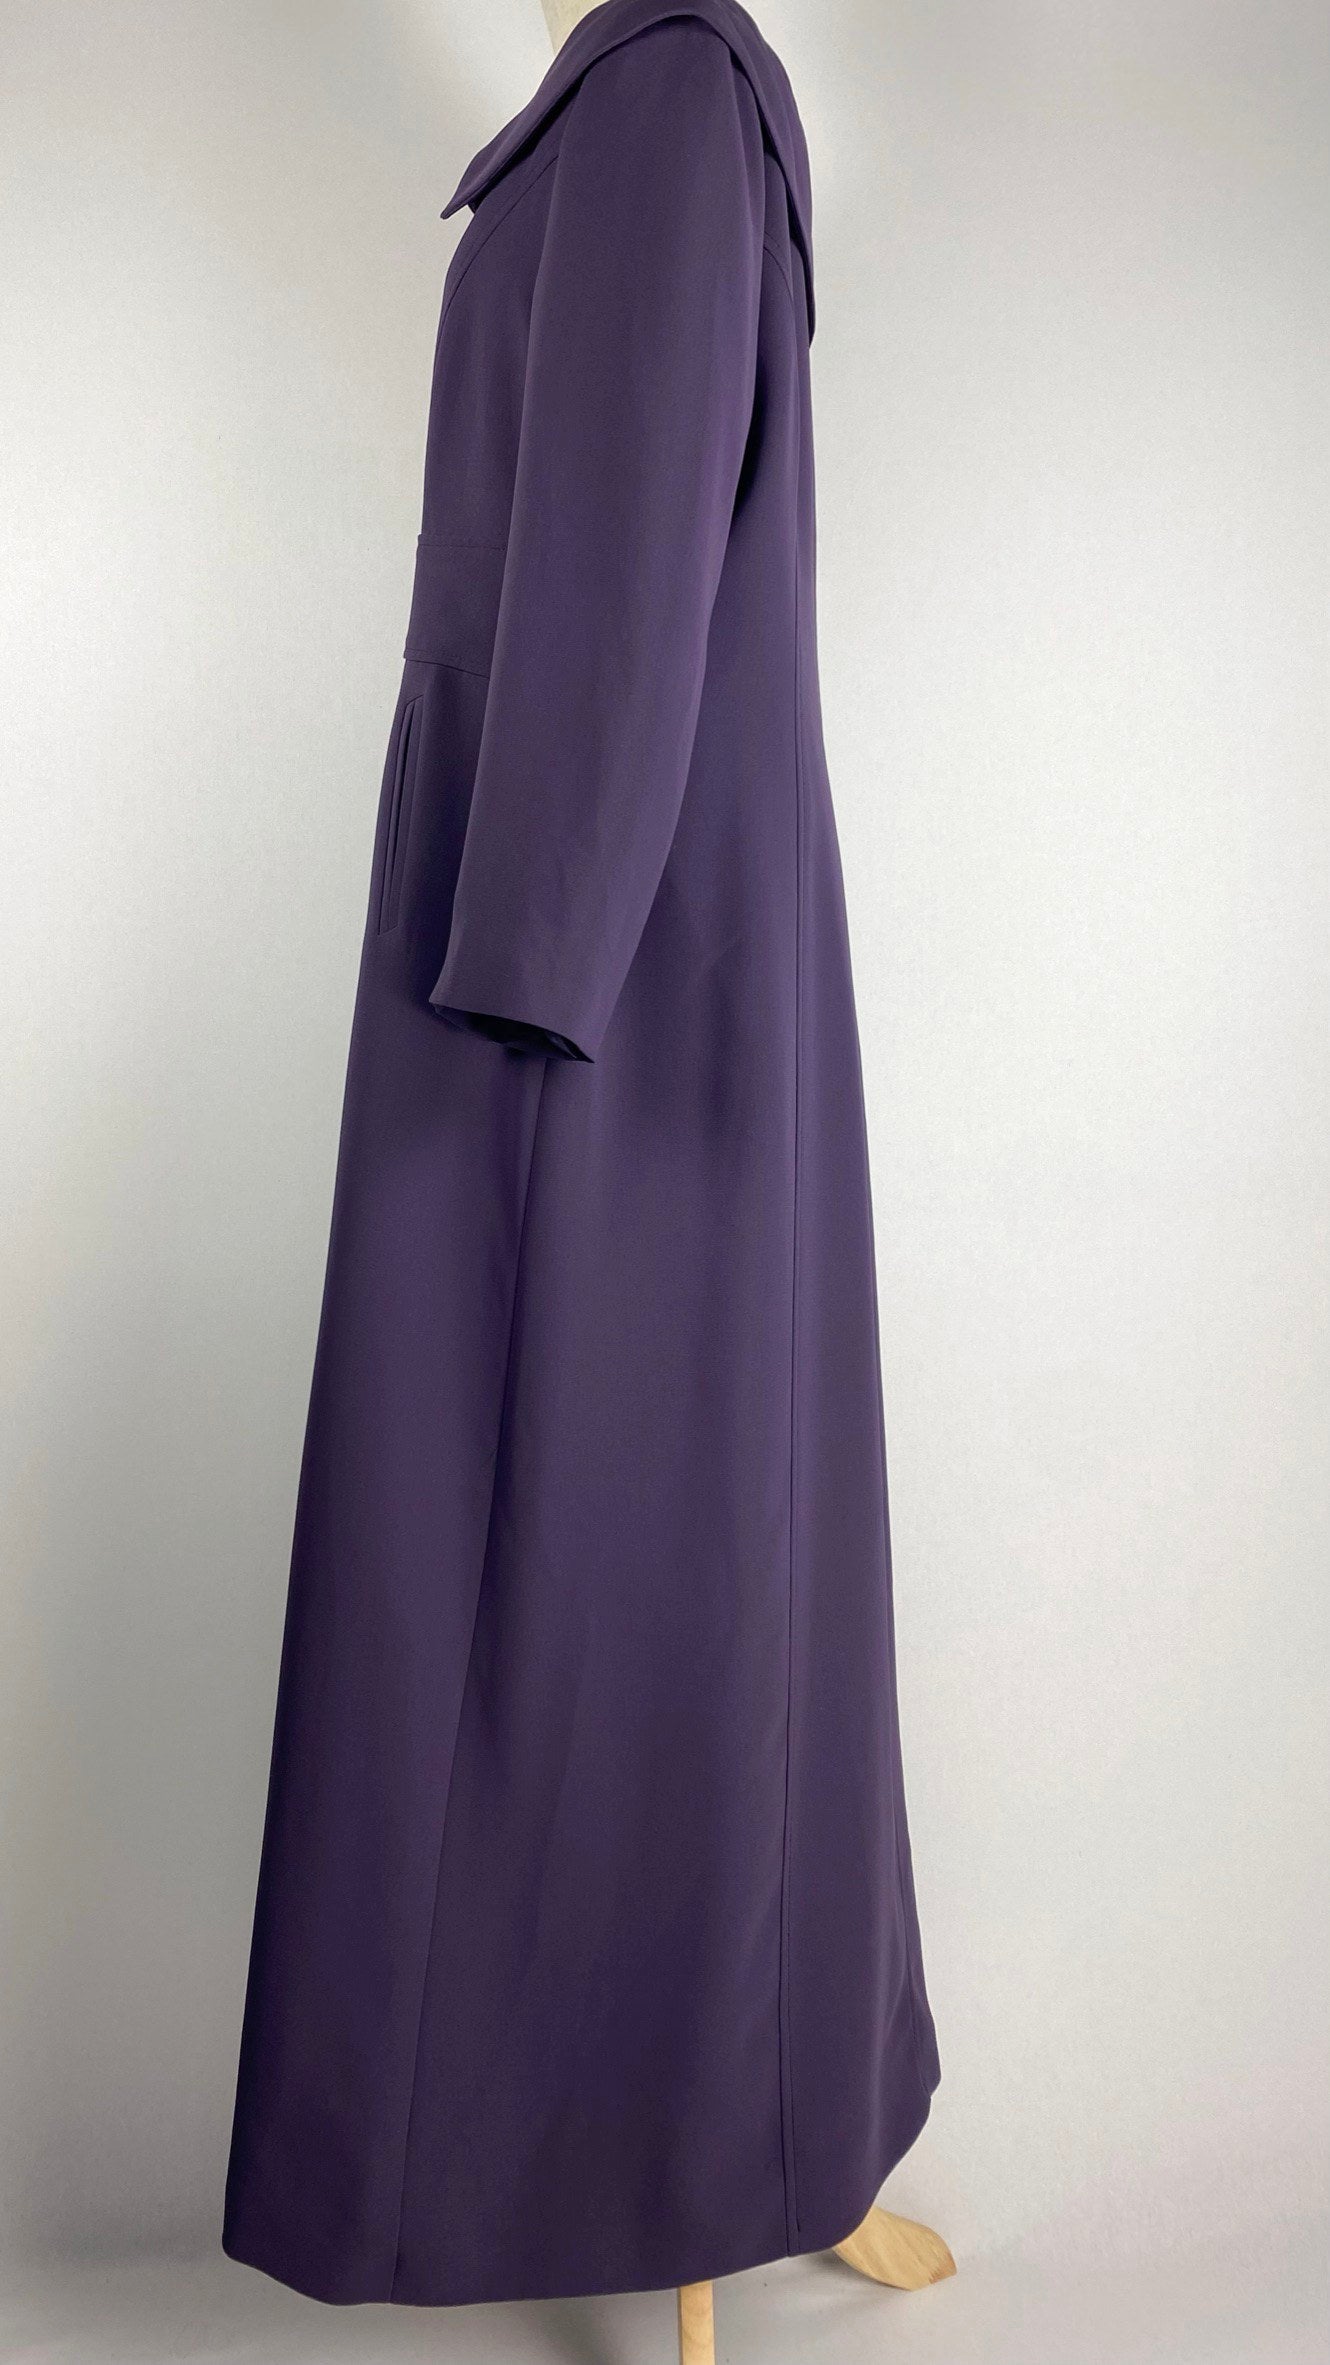 Button Up Abaya+ Jilbab, Purple